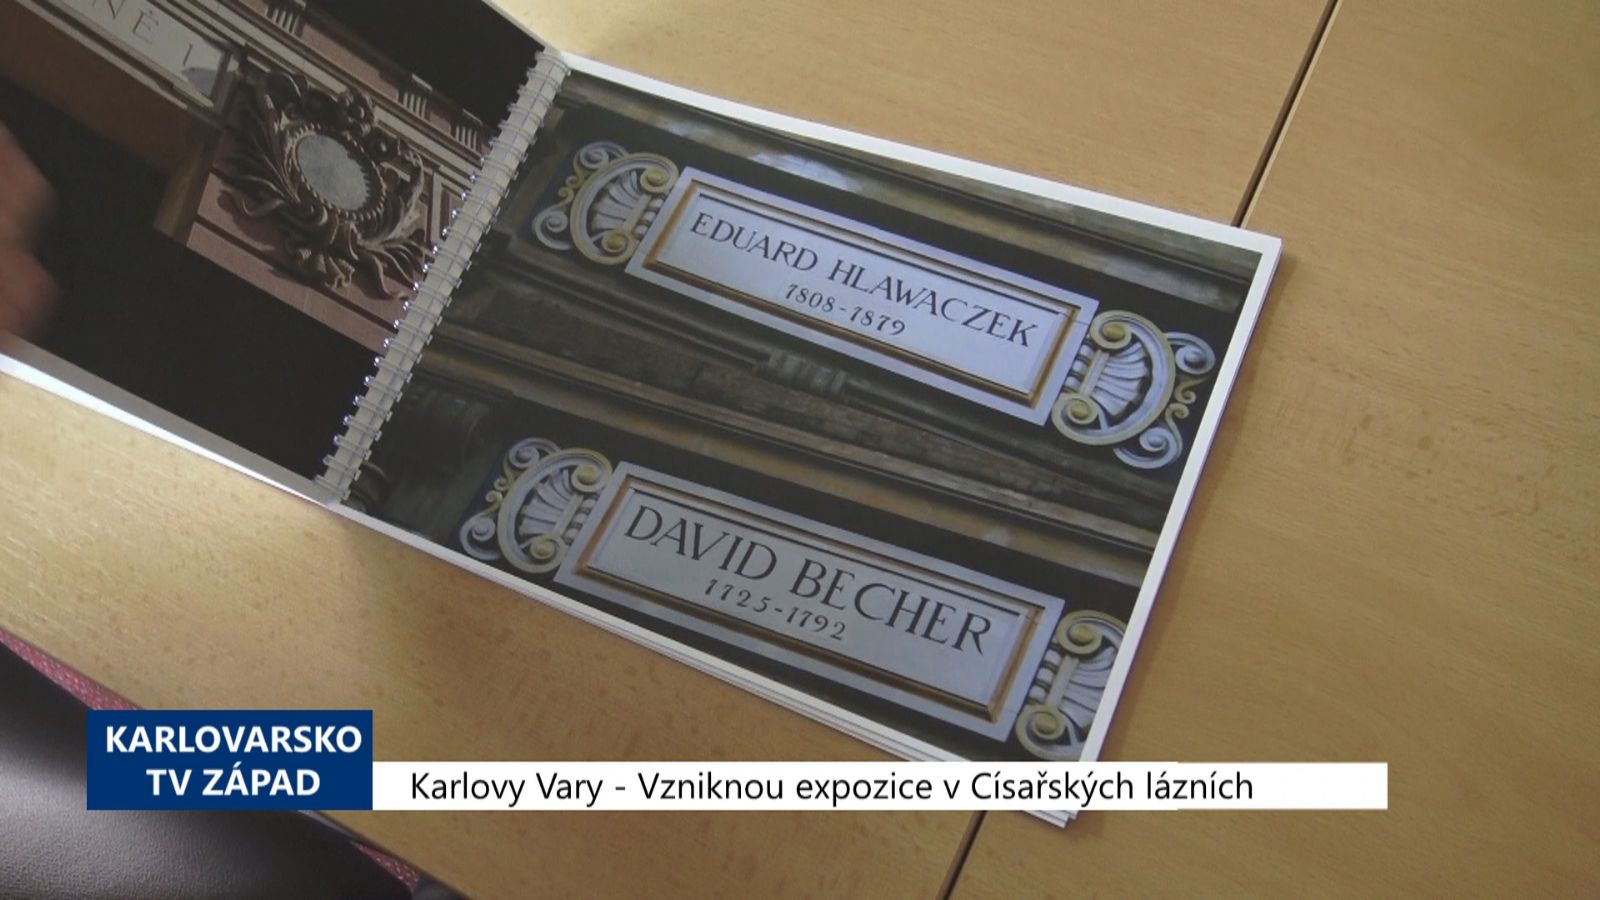 Karlovy Vary: Vzniknou expozice v Císařských lázních (TV Západ)